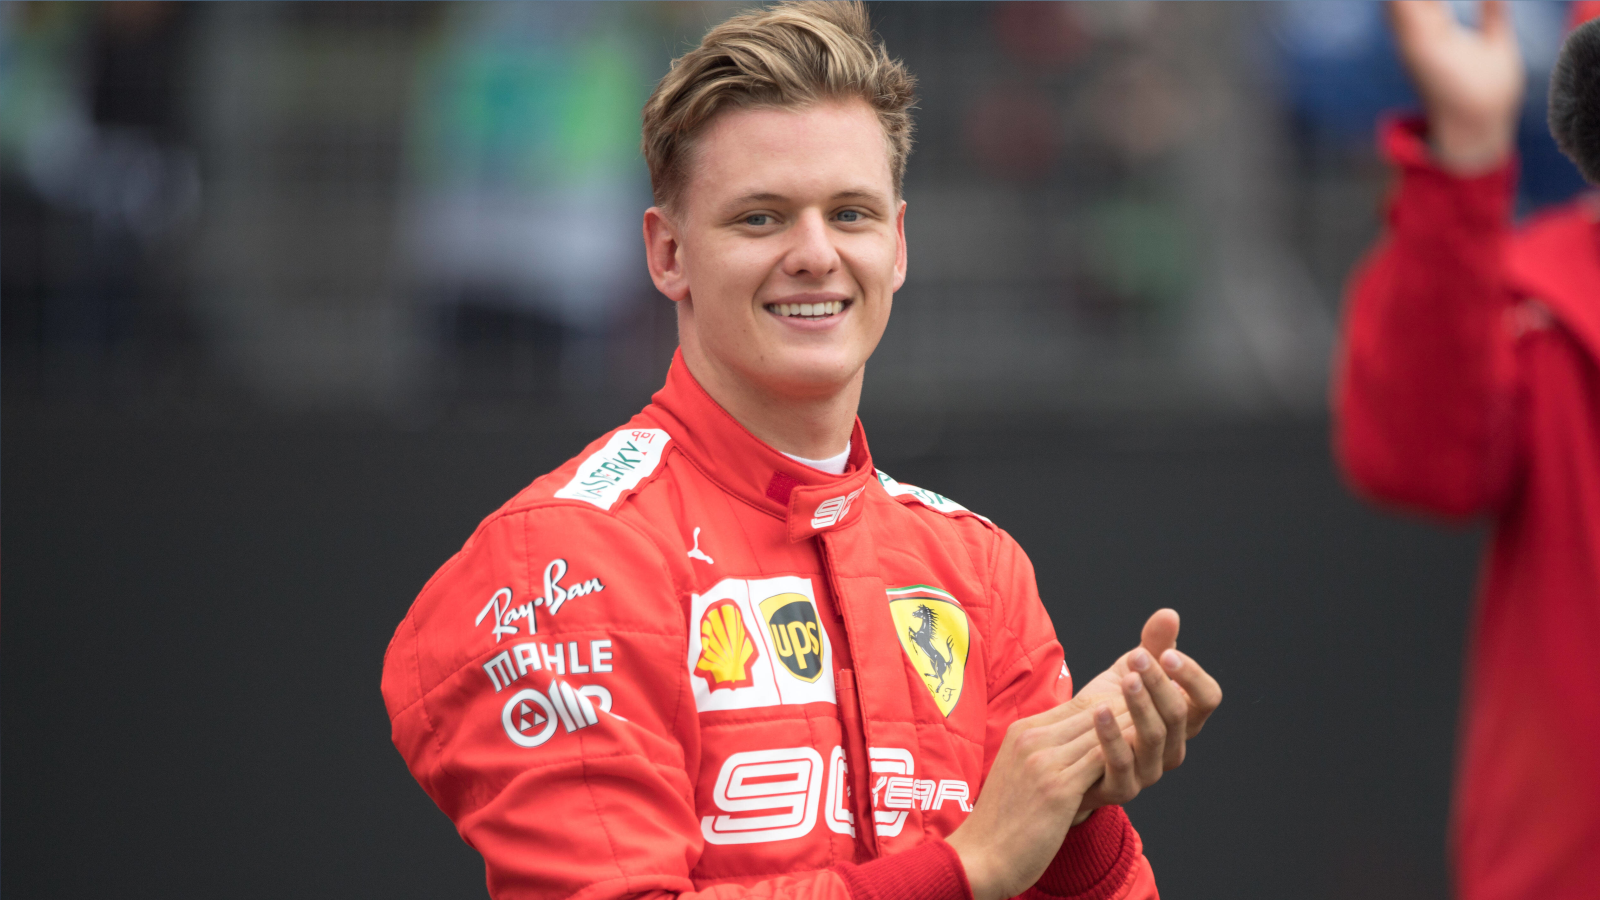 
                <strong>Ferrari ruft! Die Karriere von Mick Schumacher</strong><br>
                Mick Schumacher hat seine erste Saison in der Formel 1 hinter sich gebracht. Nun wurde er von Ferrari zum Ersatzfahrer bestimmt. Mick ist weiter auf den Spuren seines Vaters. ran zeigt seinen Werdegang vom Kart-Spross zum Formel-1-Piloten.
              